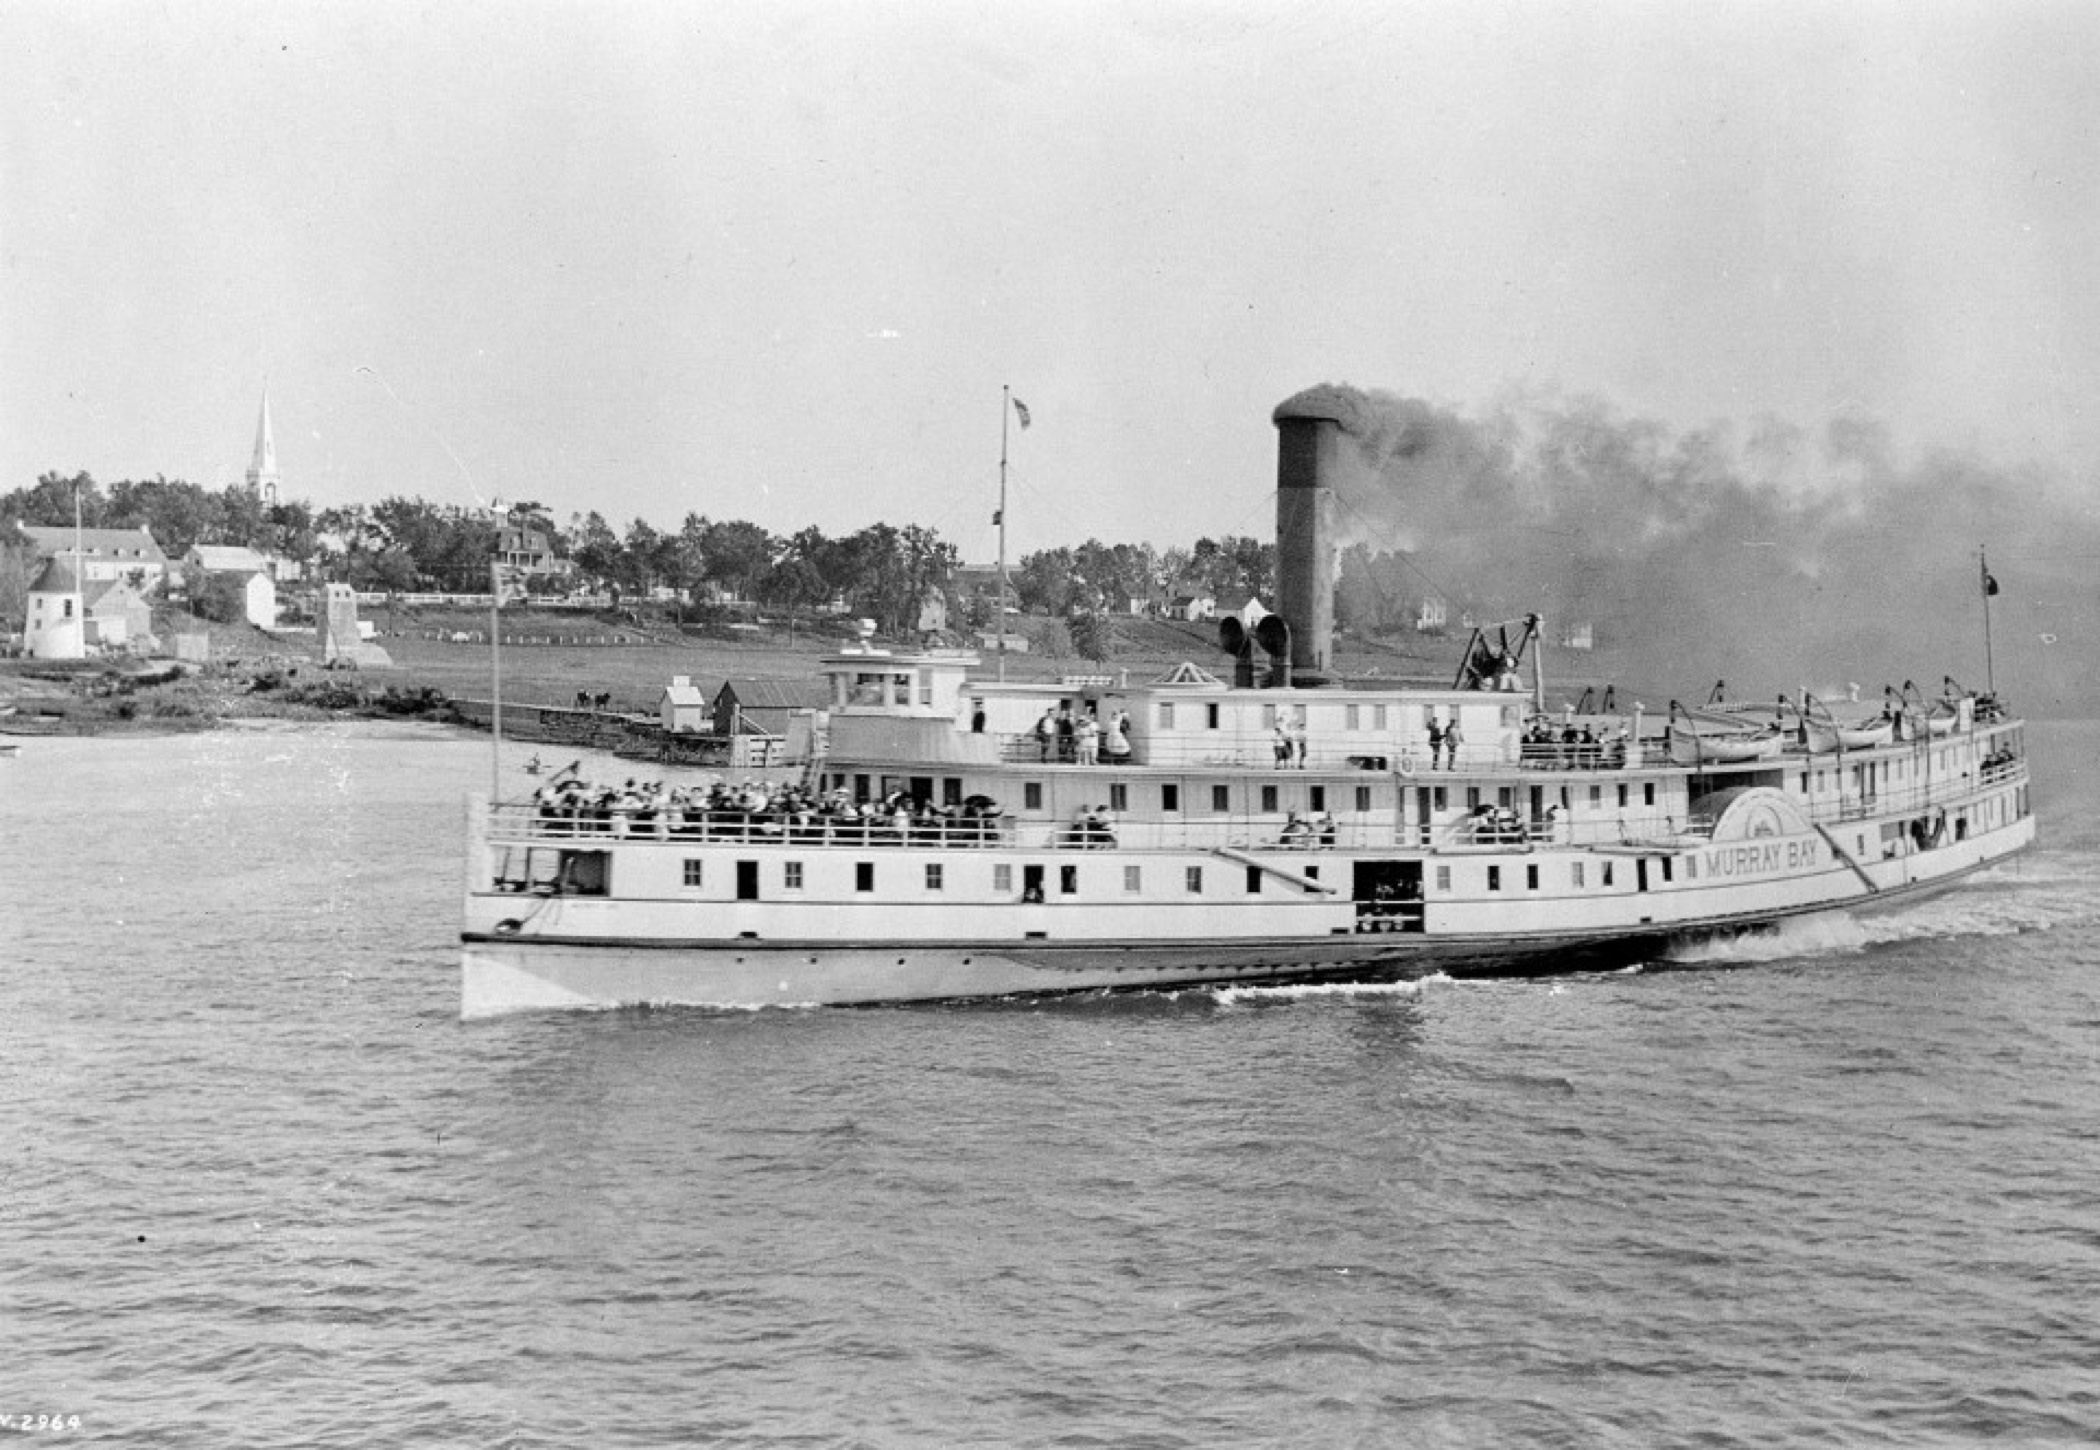 Image en noir et blanc d'un traversier à vapeur de taille moyenne en transit sur le fleuve, expulsant un nuage de fumée noire de sa cheminée, bondé de voyageurs sur son pont avant.